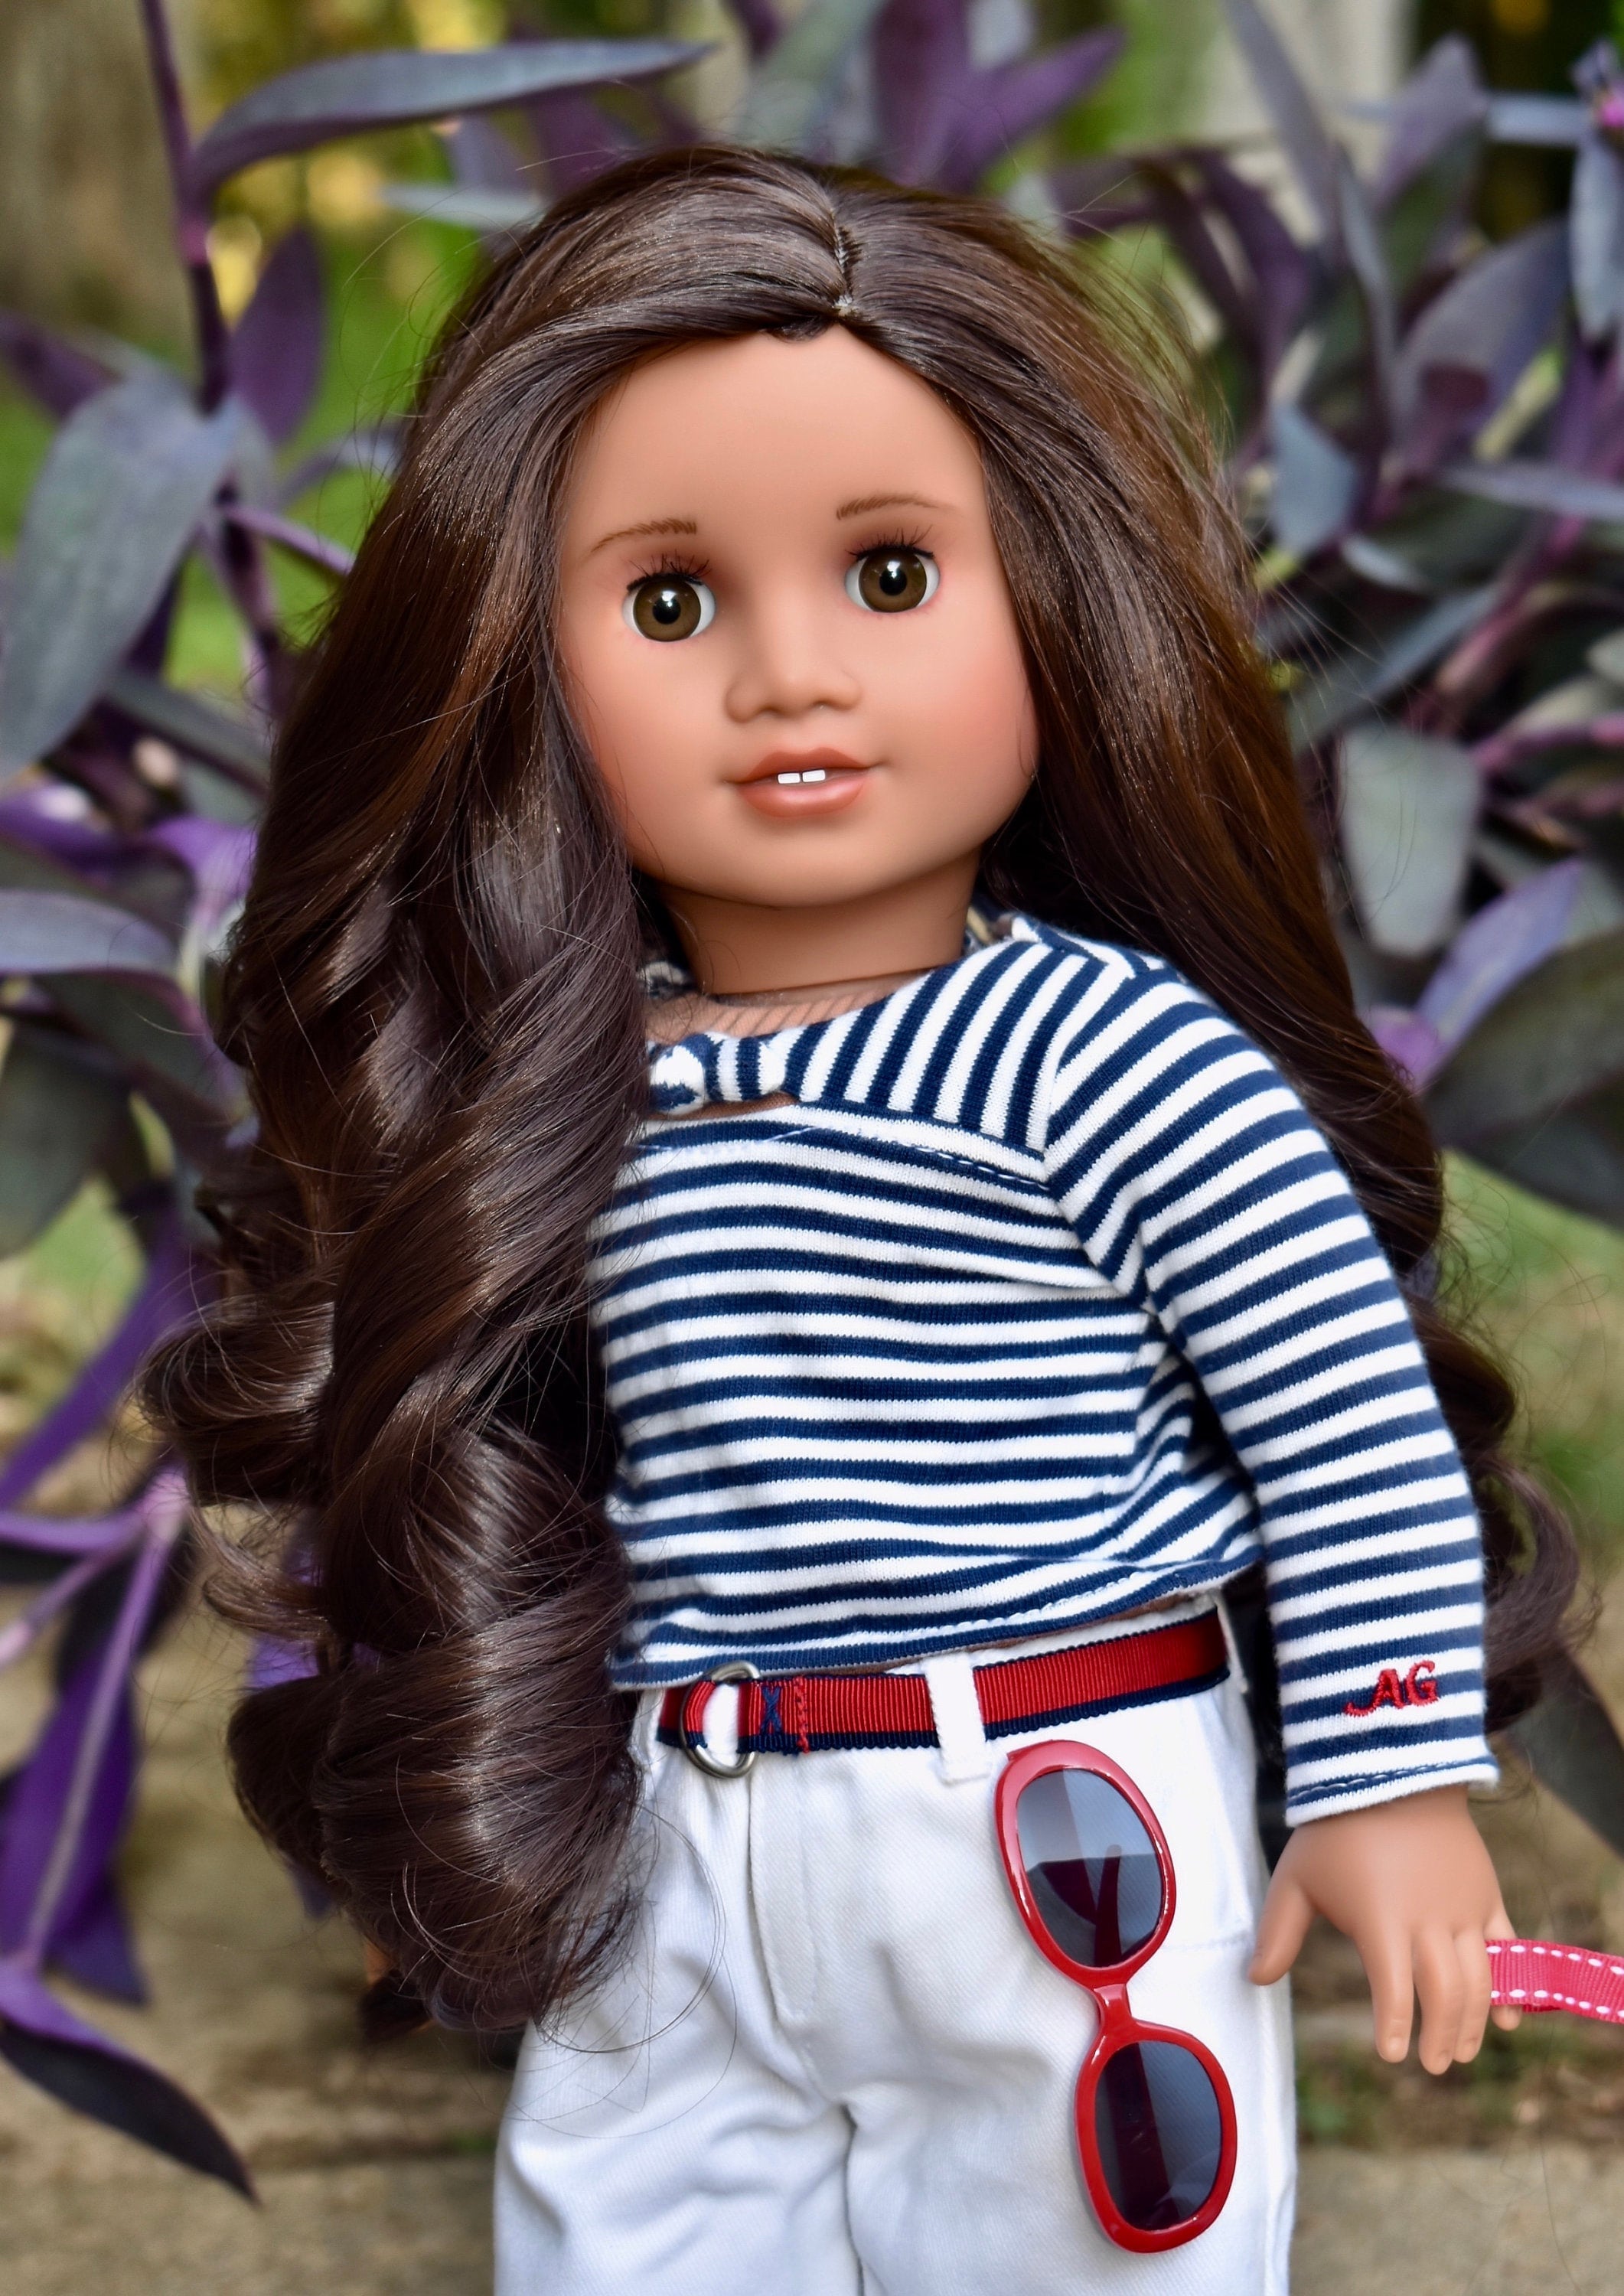 Custom doll wig for 18" American Girl Dolls - Heat Safe - Tangle Resistant-fits 10-11" head size of 18" dolls OG Blythe BJD Gotz  Dark Brown